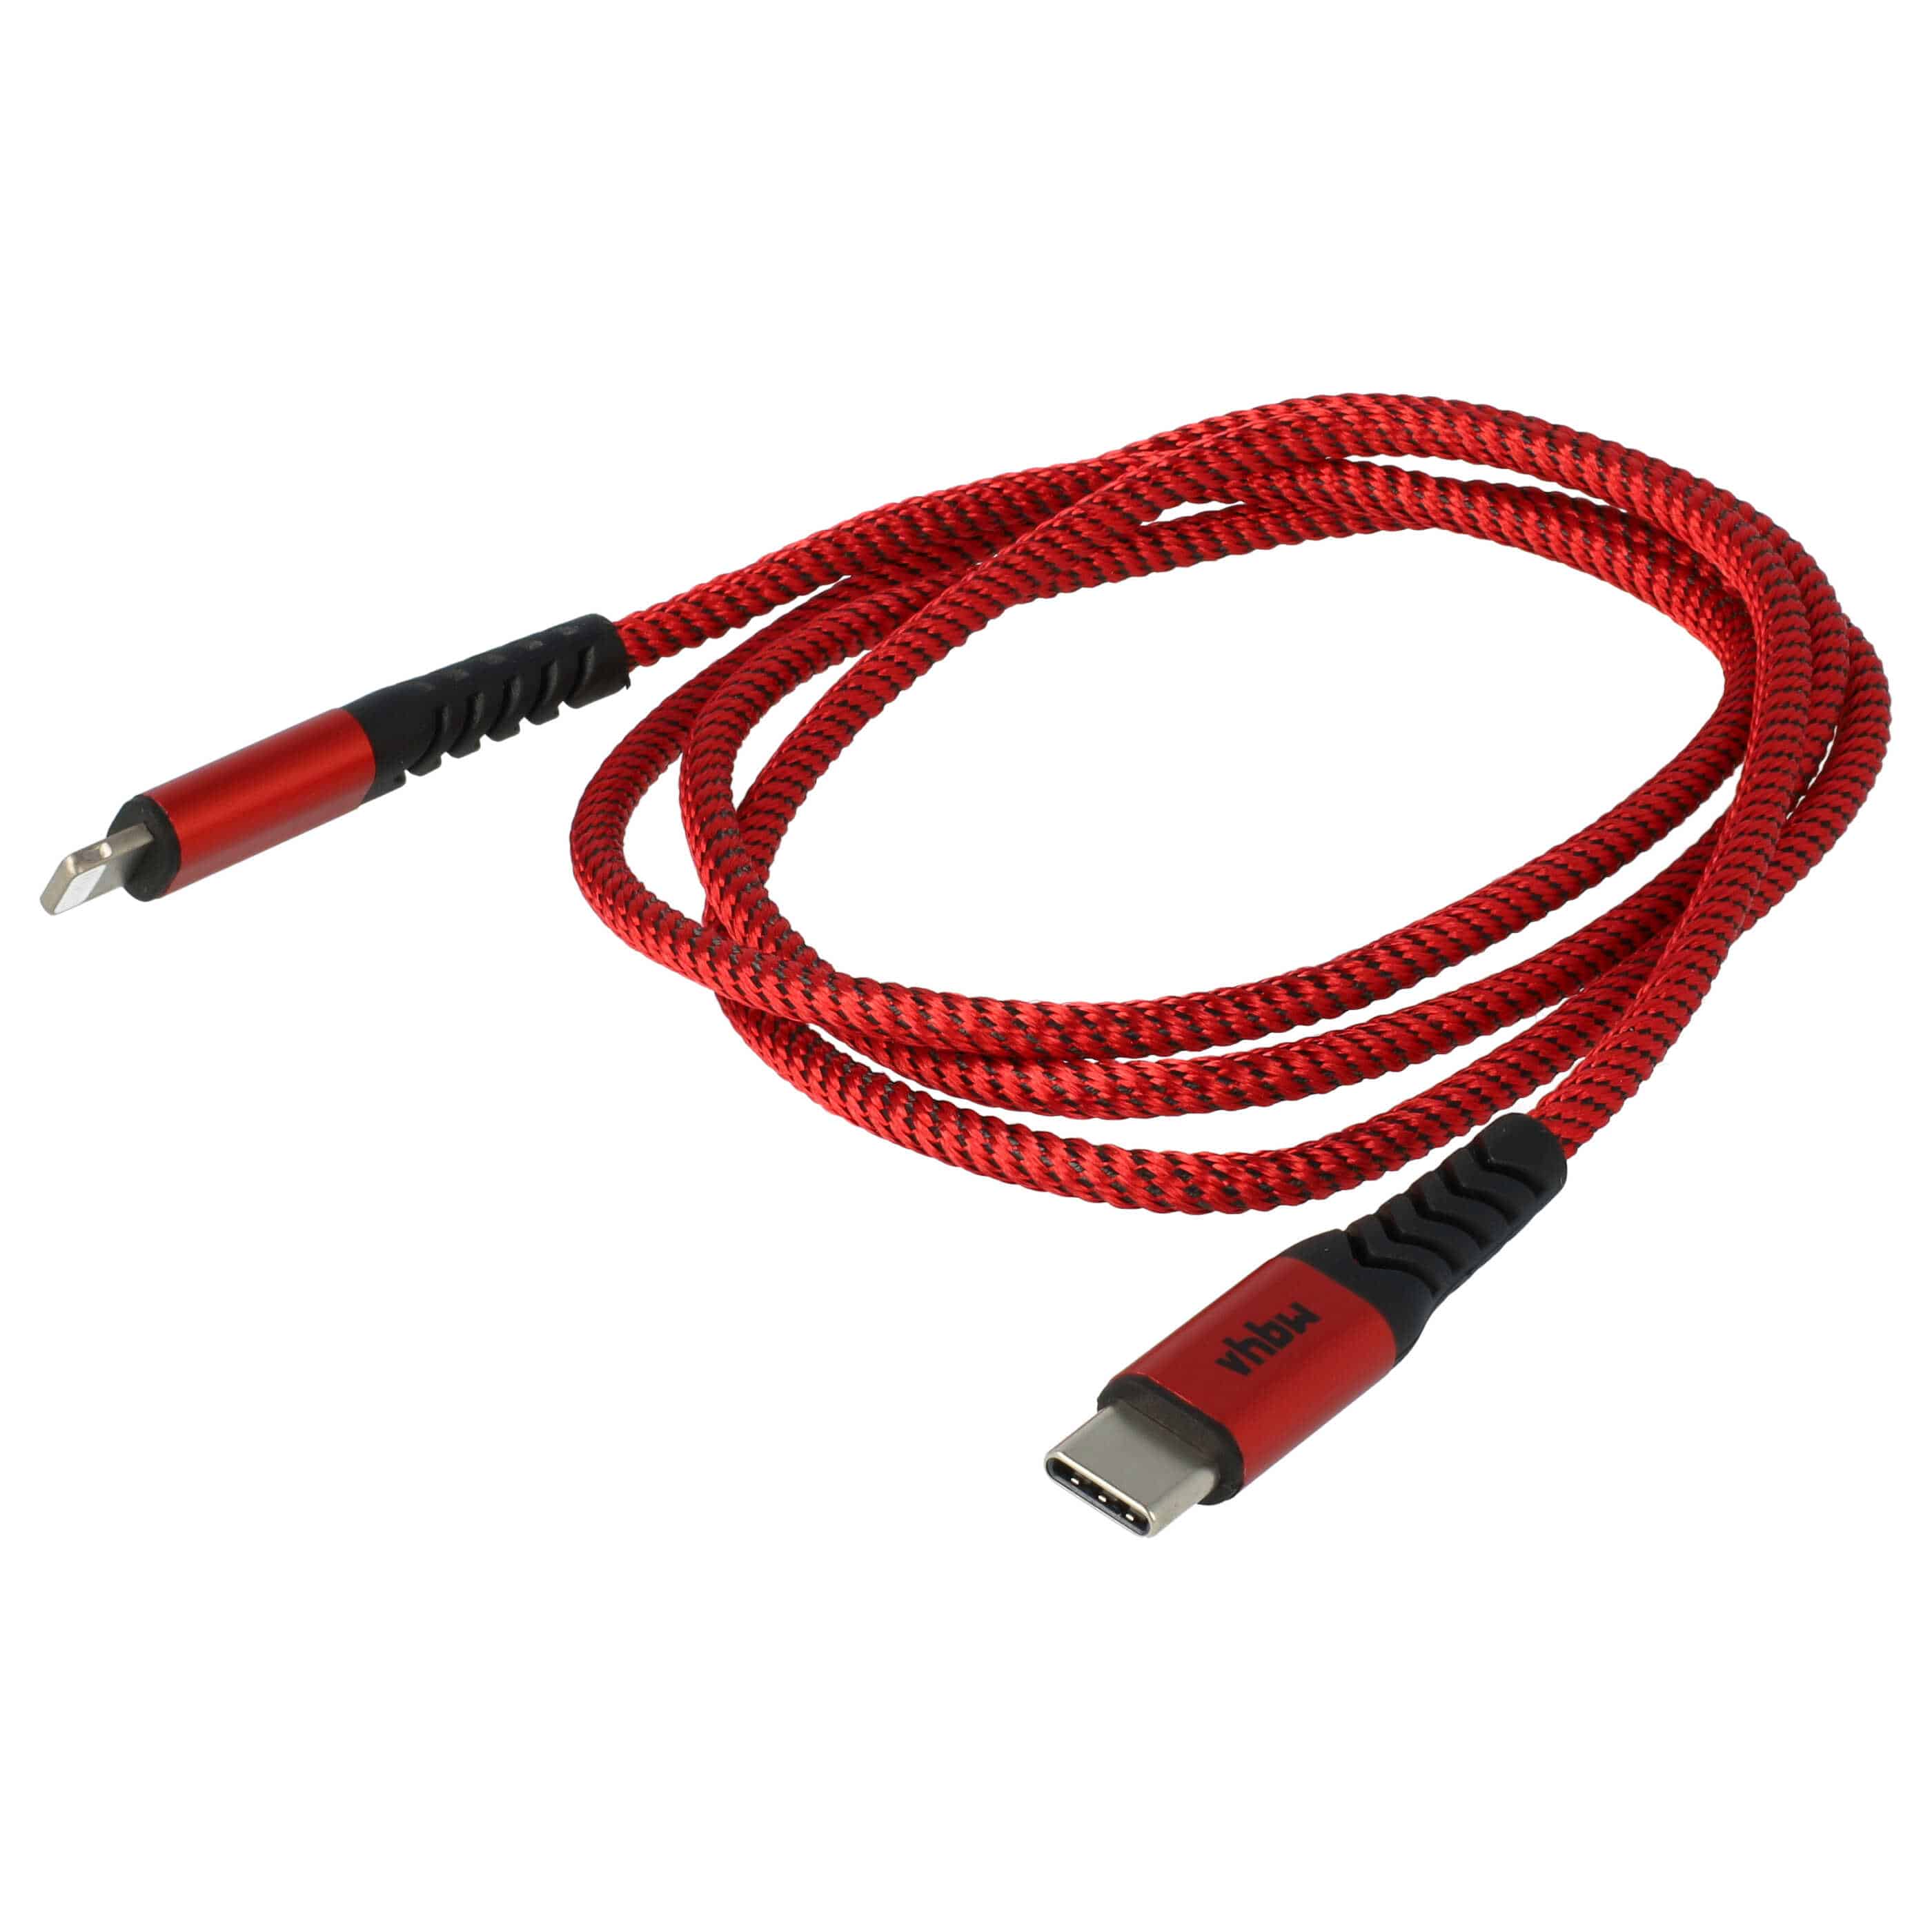 Cavo lightning - USB C, Thunderbolt 3 per dispositivi Apple iOS Apple MacBook - nero / rosso, 100cm